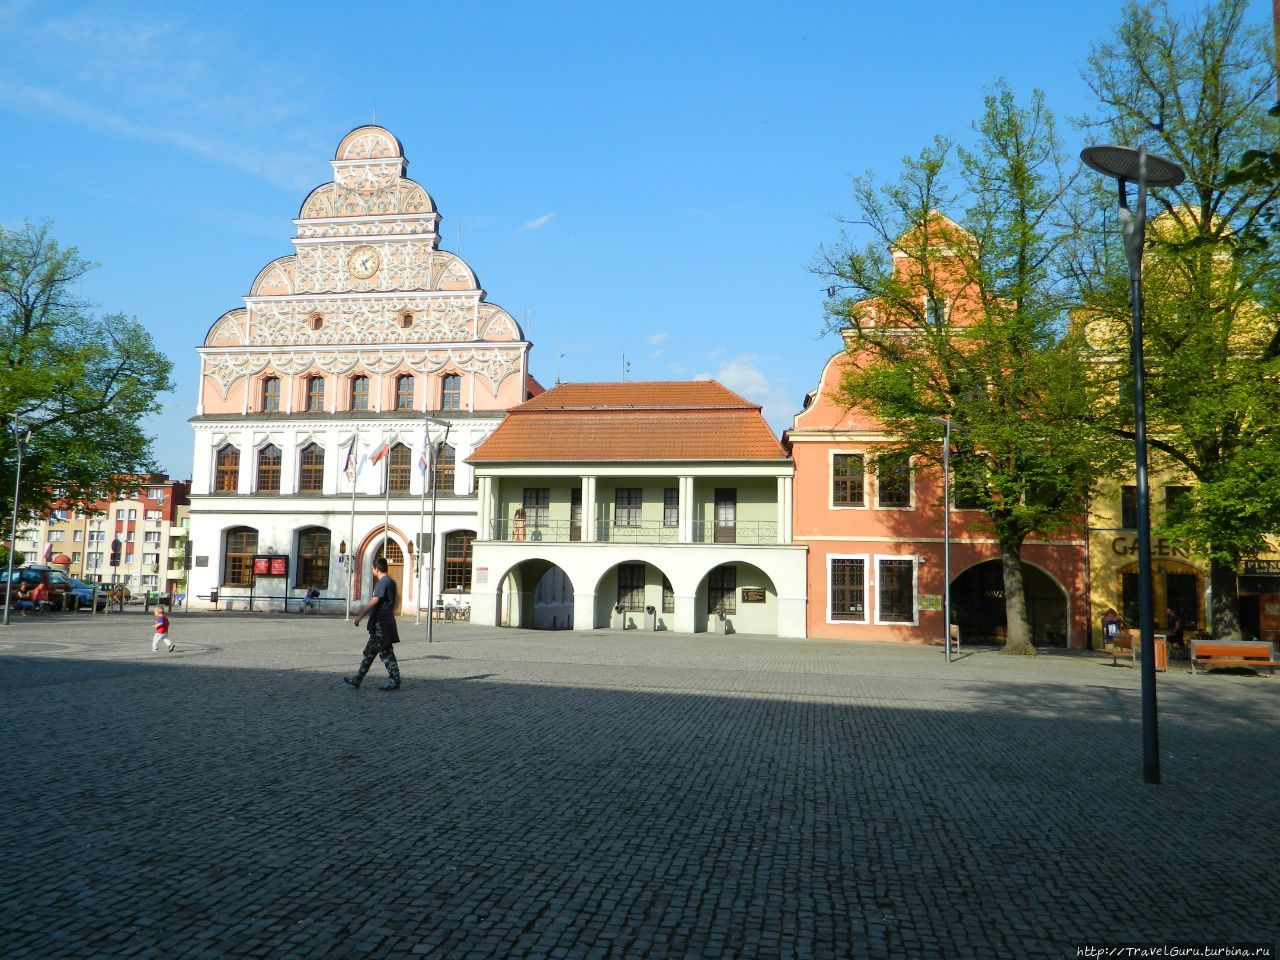 Рыночная площадь и фасад здания ратуши (левое здание) Старгард-Щециньски, Польша